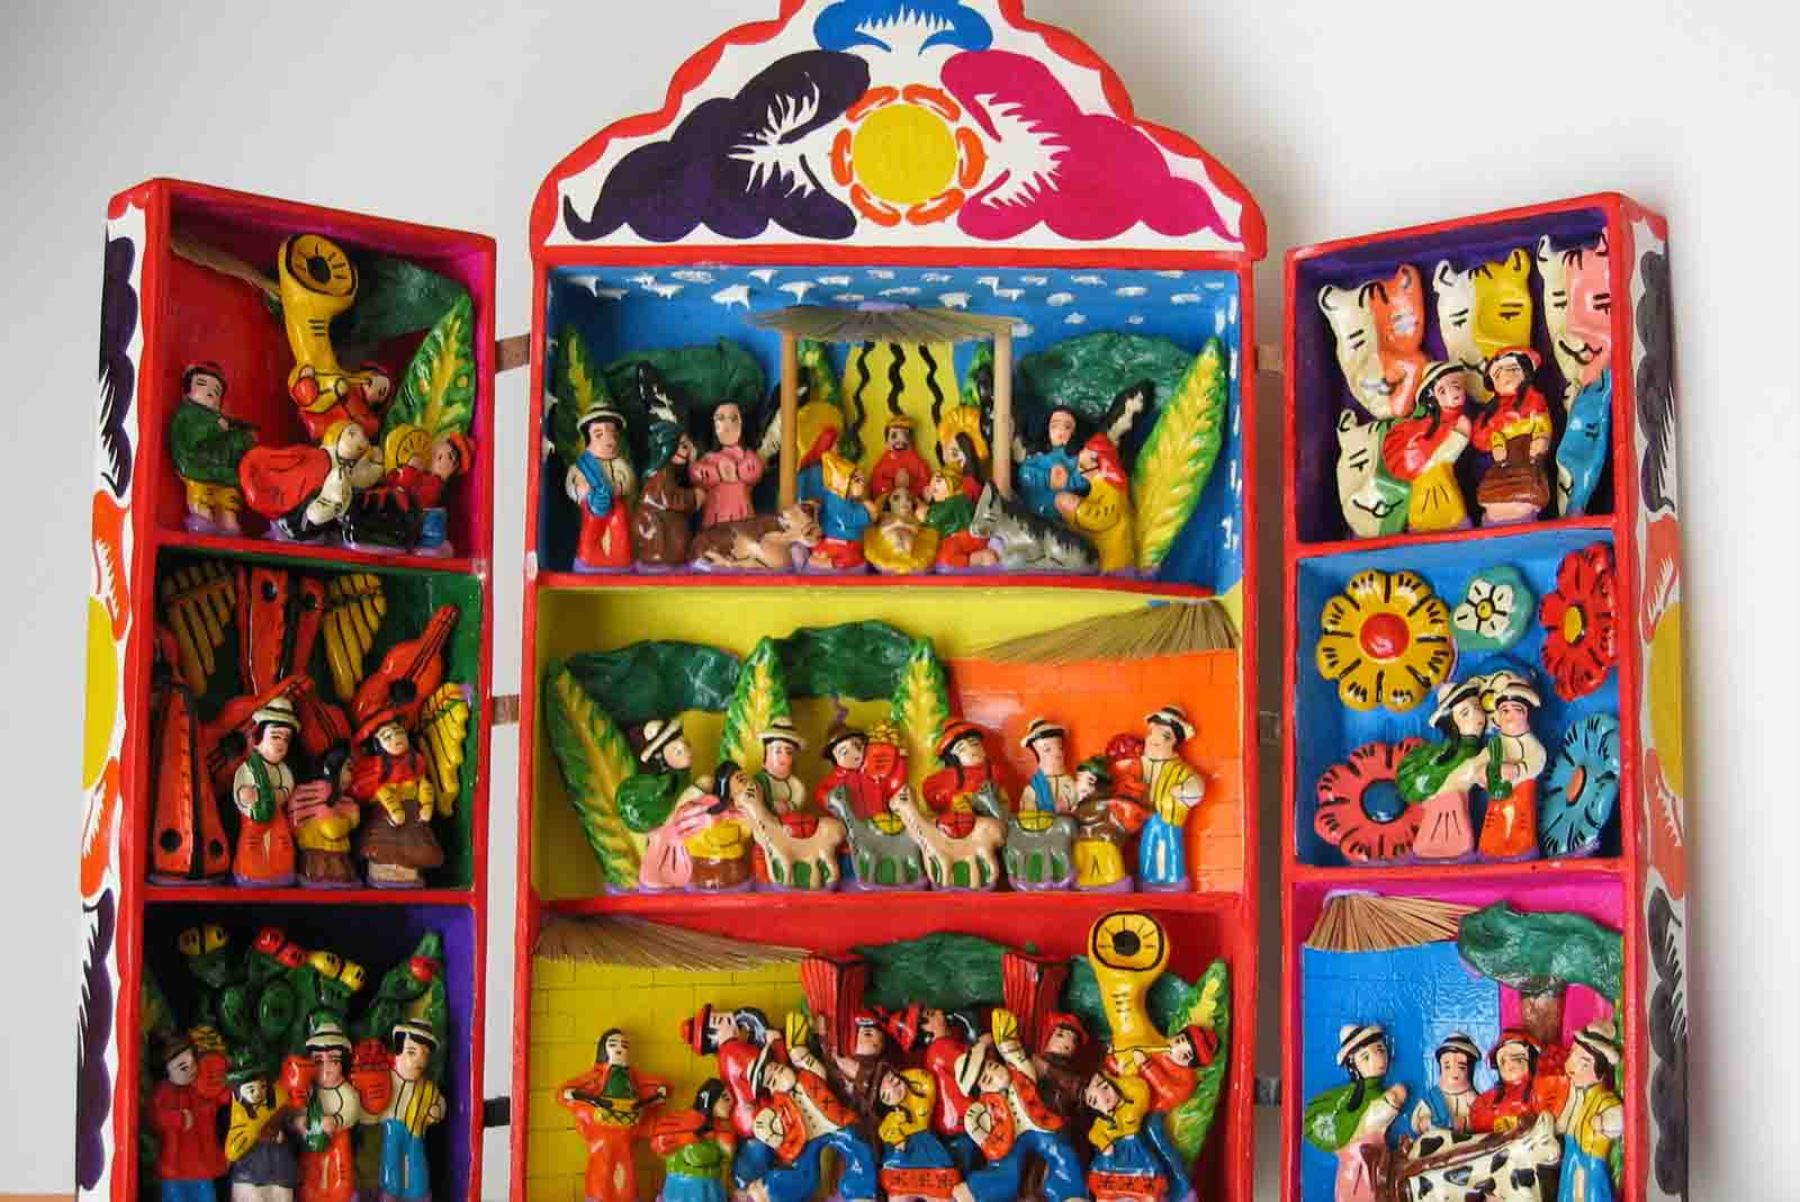 El retablo ayacuchano ha sido declarado Patrimonio Cultural de la Nación y representa una de las mayores expresiones del sincretismo cultural y religioso andino en nuestro país. ANDINA/Difusión